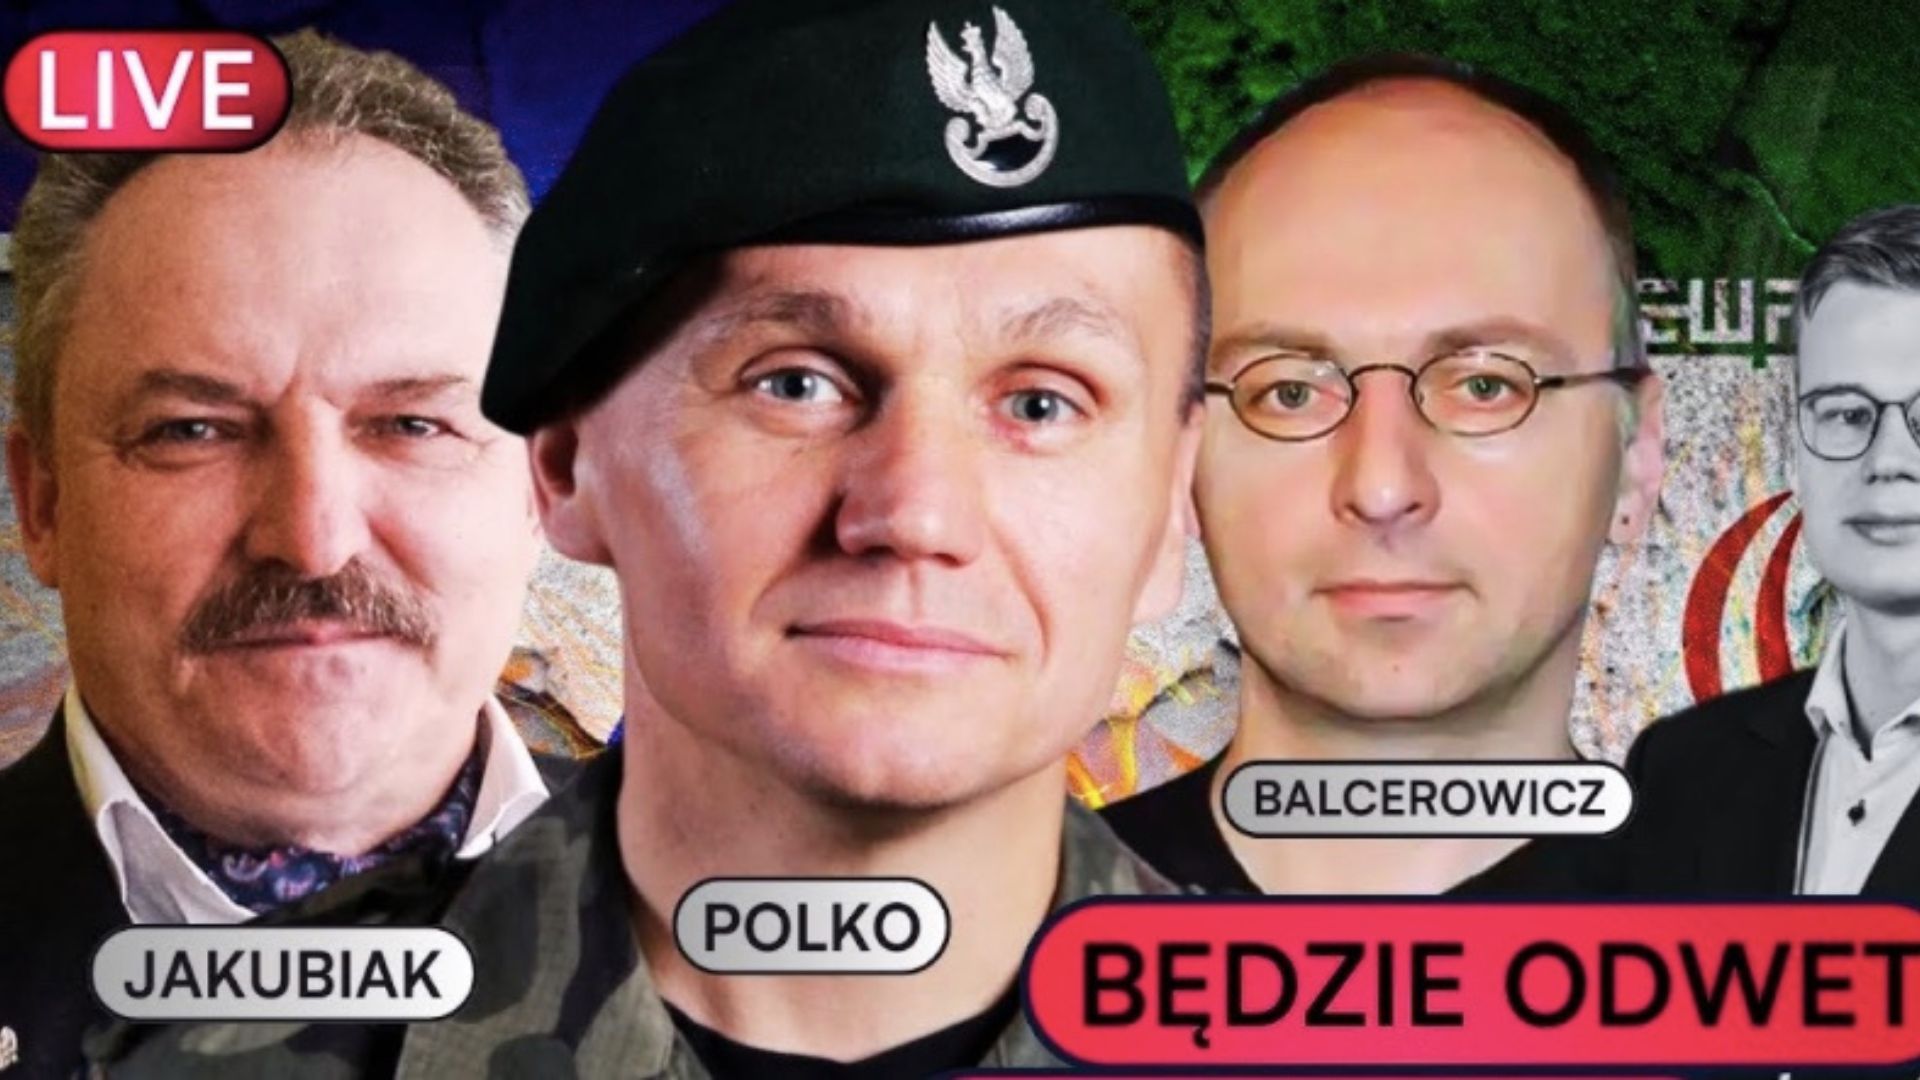 Marek Jakubiak, Roman Polko, Piotr Balcerowicz